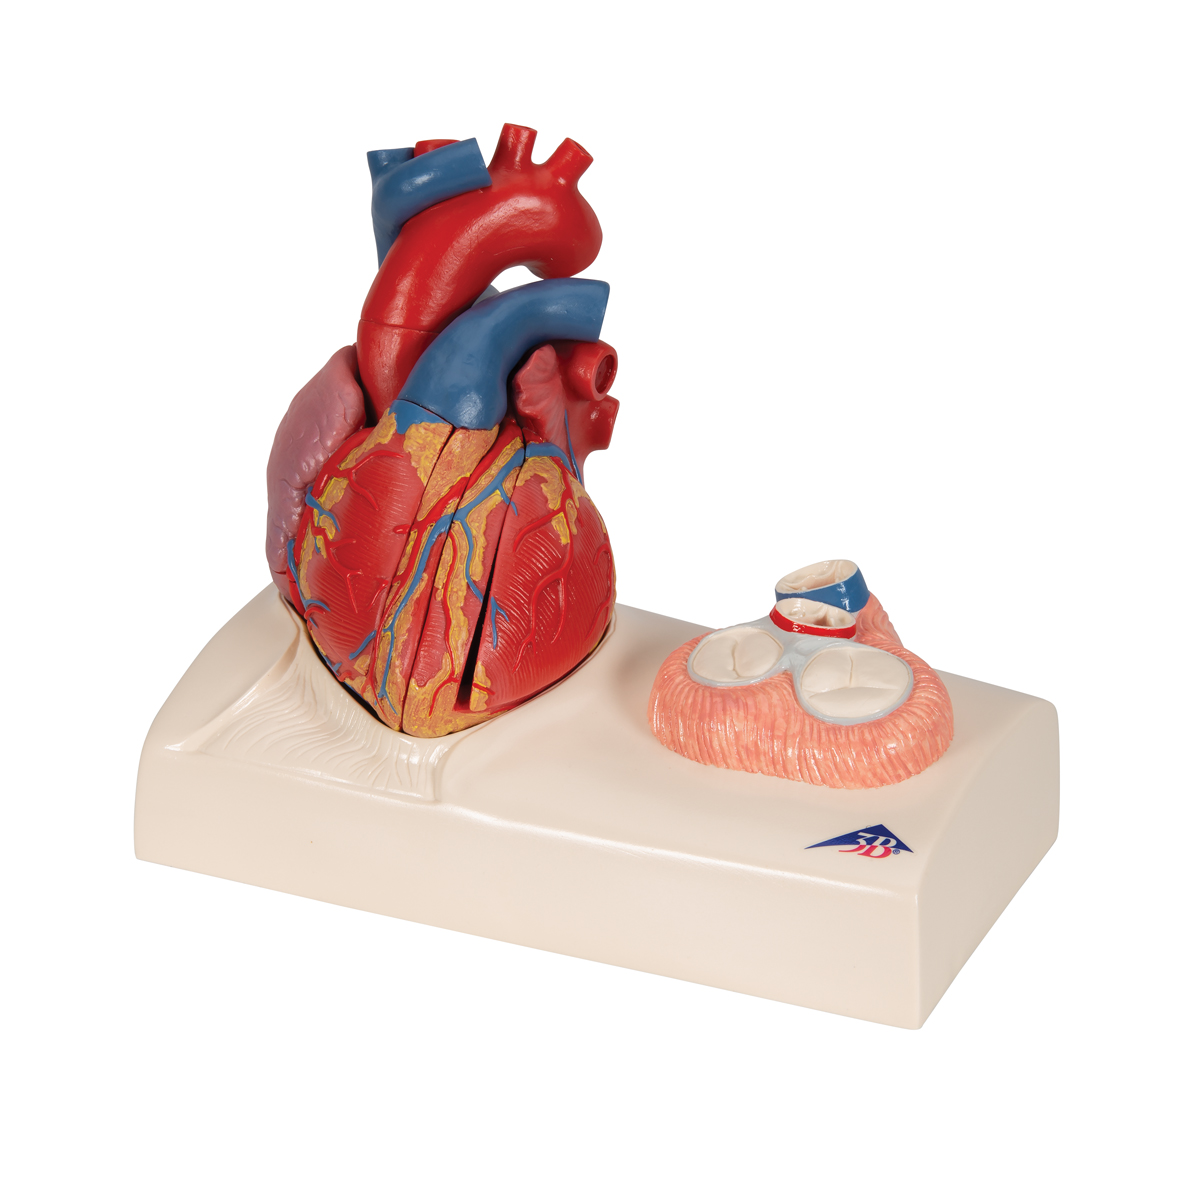 fém szív egészsége alternatív szívgyógyászati kezelések